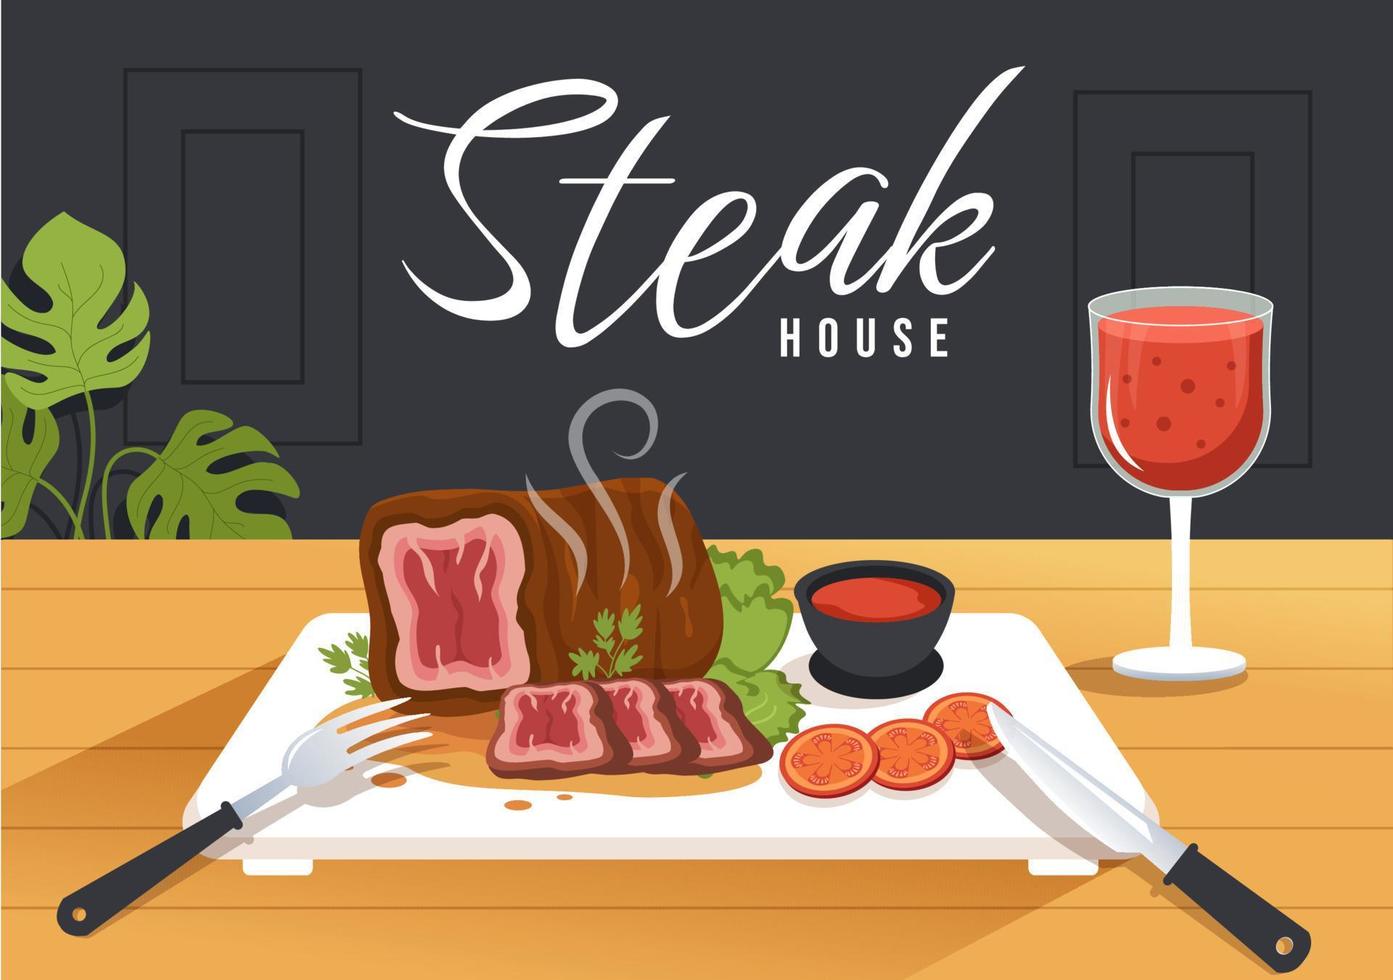 Steakhouse aus gegrilltem Fleisch mit saftigem, köstlichem Steak, Salat und Tomaten zum Grillen in handgezeichneter Schablonenillustration der flachen Karikatur vektor